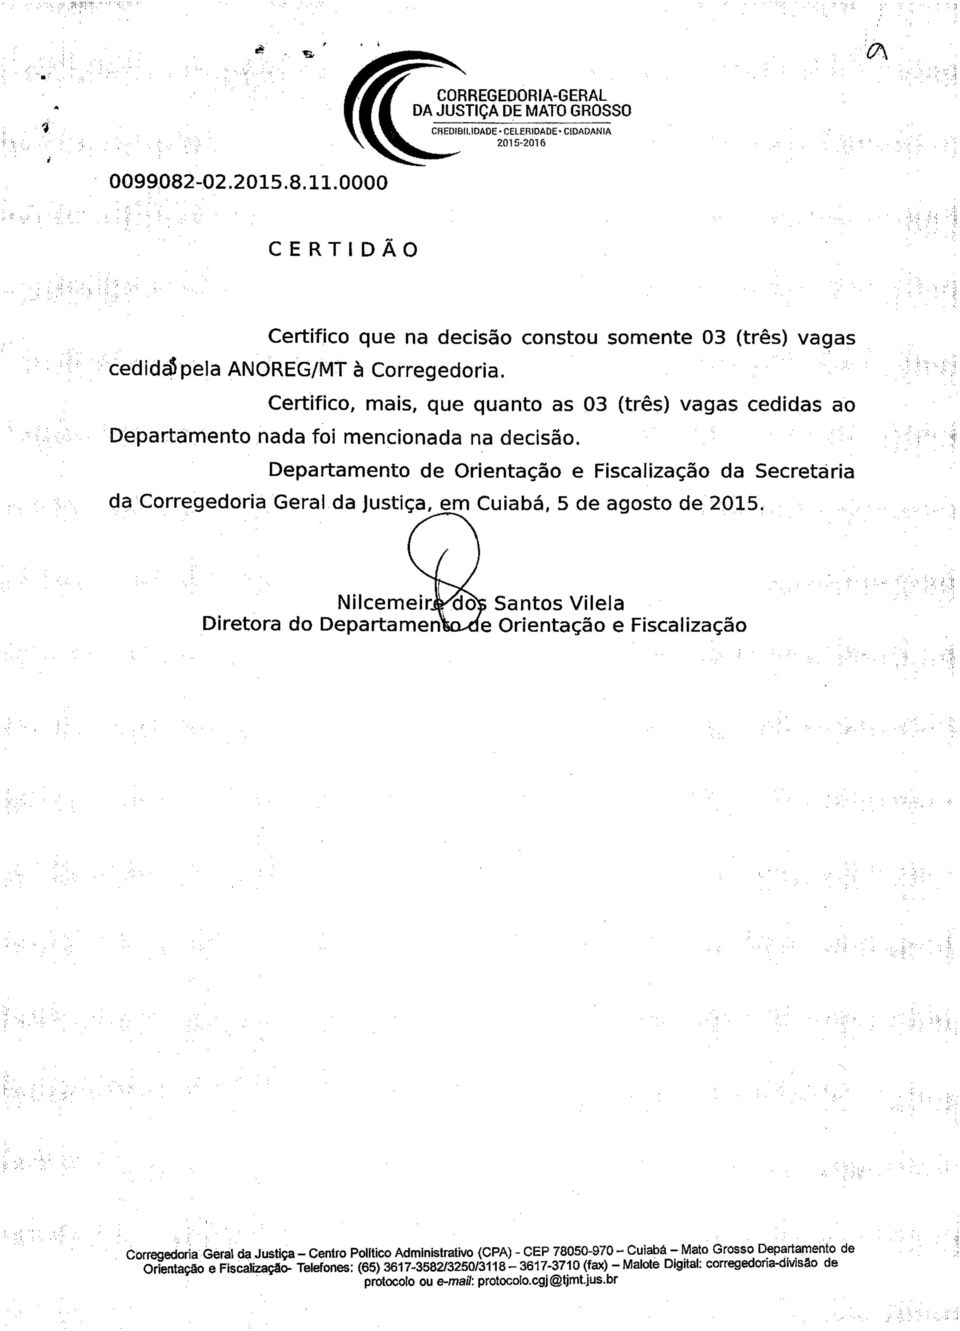 Departamento de Orientação e Fiscalização da Secretária da Corregedoria Geral da Justiça, em Cuiabá, 5 de agosto de 2015. Nilcemeir.